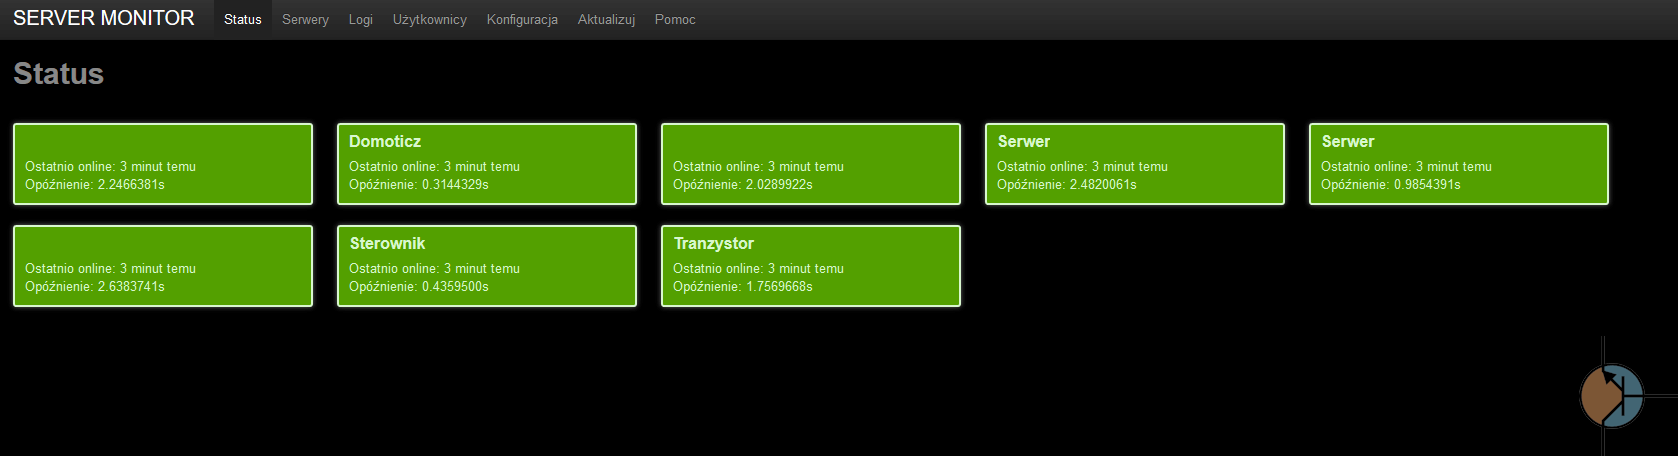 Monitor serwera WWW – RaspberryPi